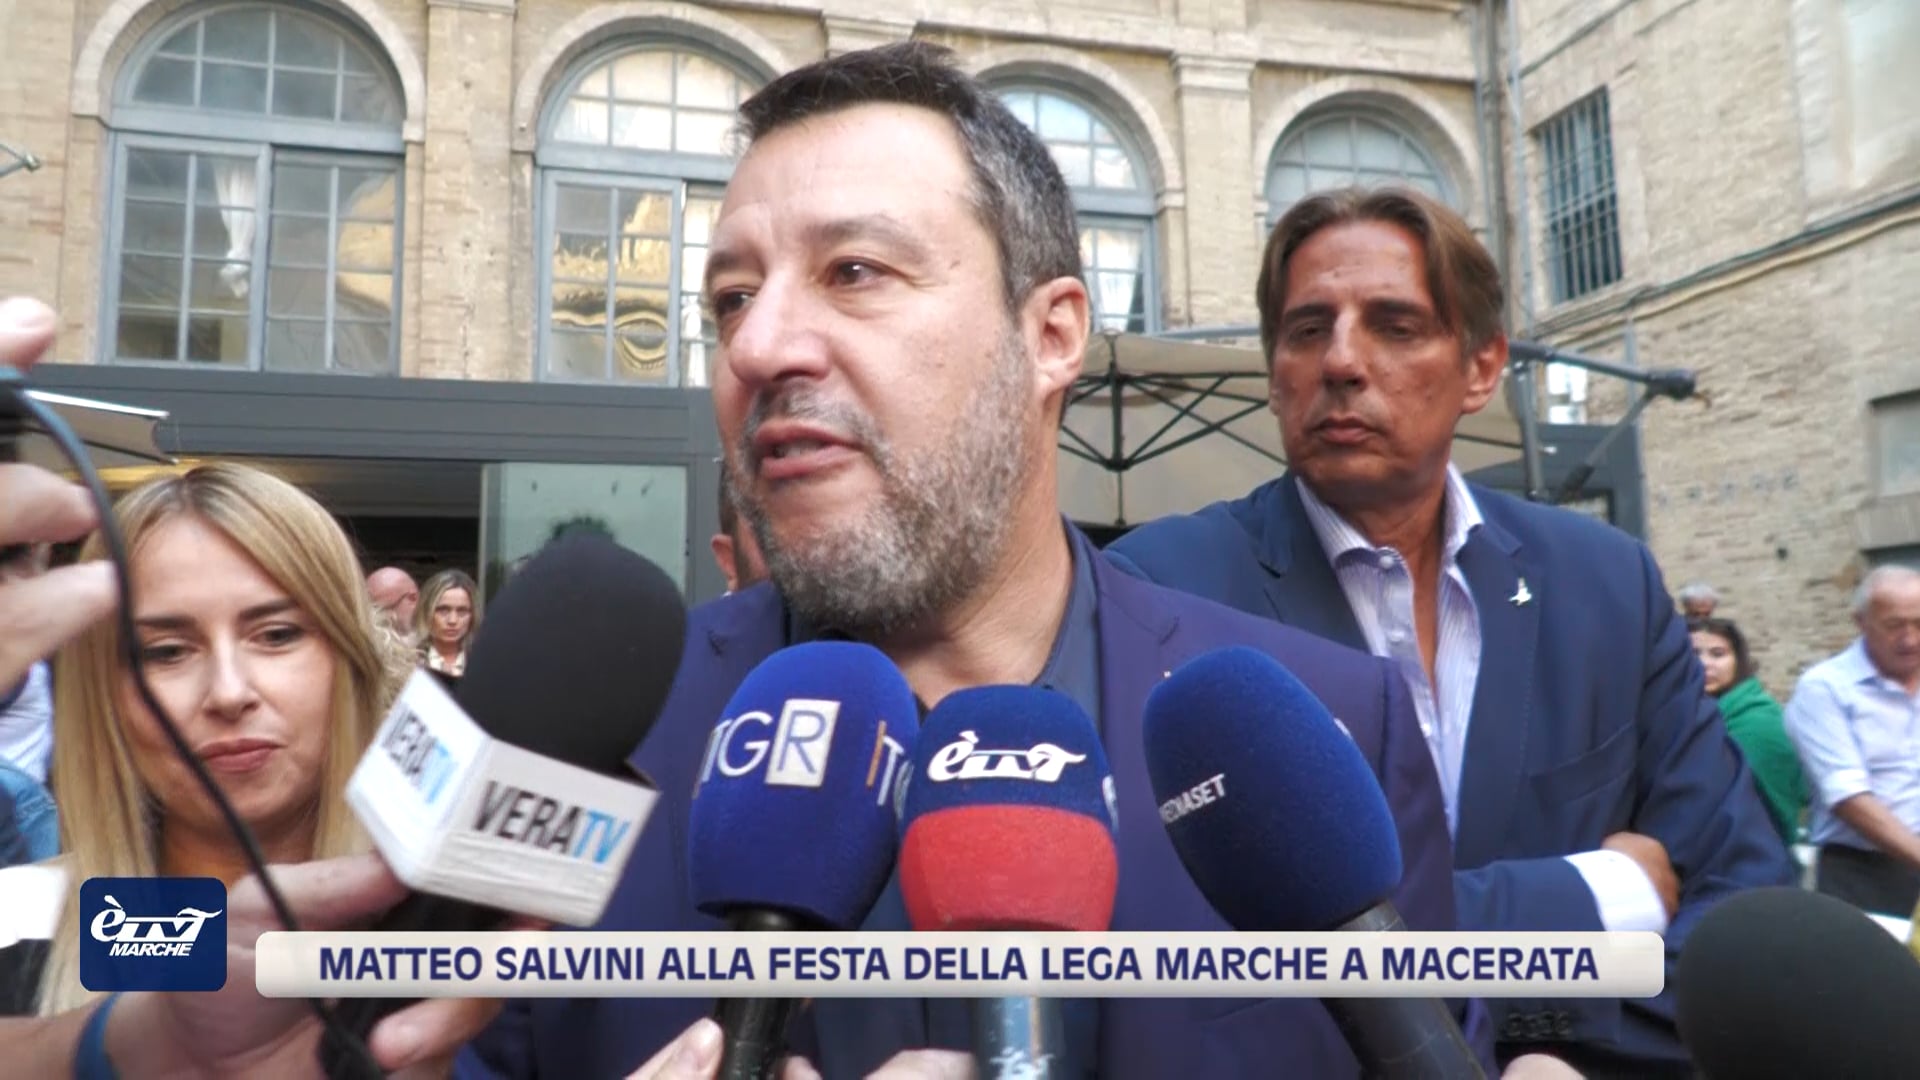 Matteo Salvini alla Festa della Lega Marche a Macerata - VIDEO